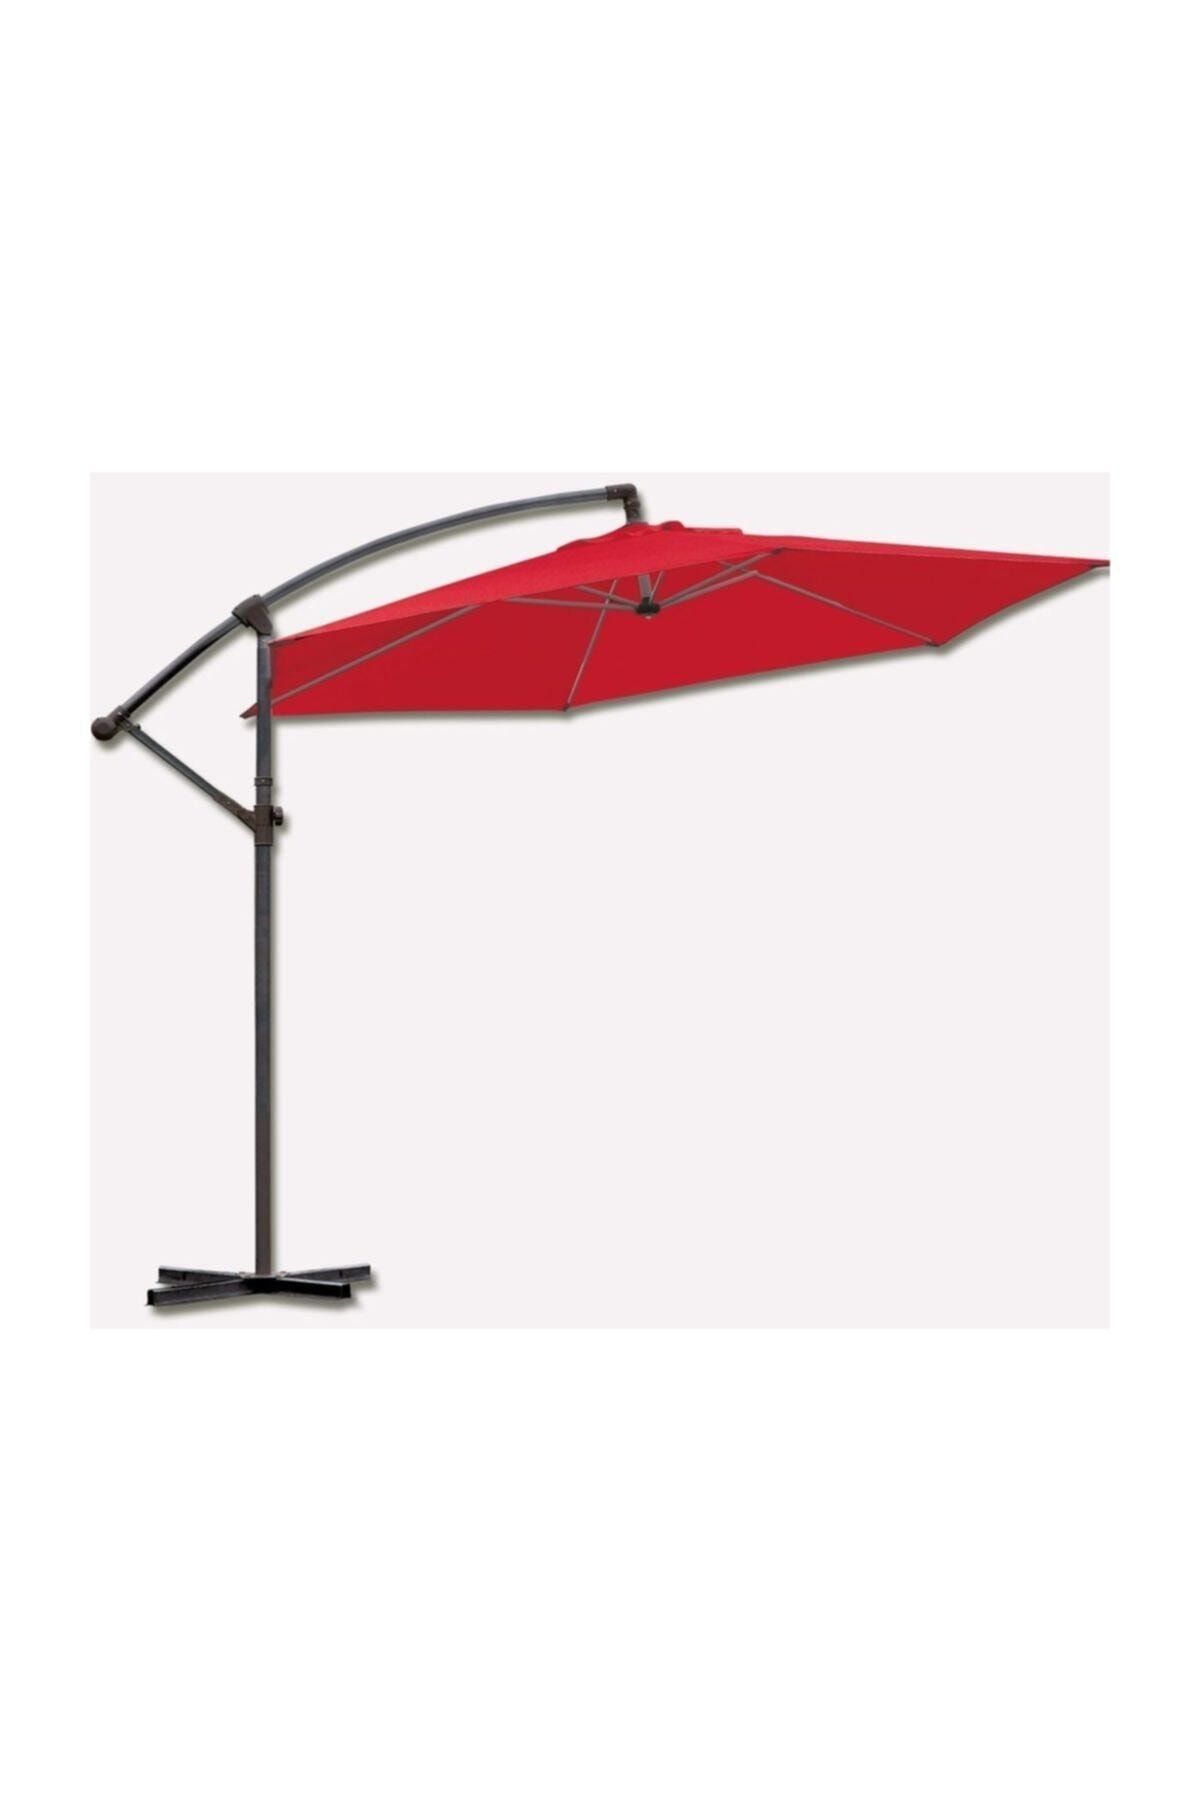 Bidesenal Bahçe Şemsiyesi 3 Metrelik Ampul Şemsiye Gölgelik Tente Kırmızı Renkli Aş05